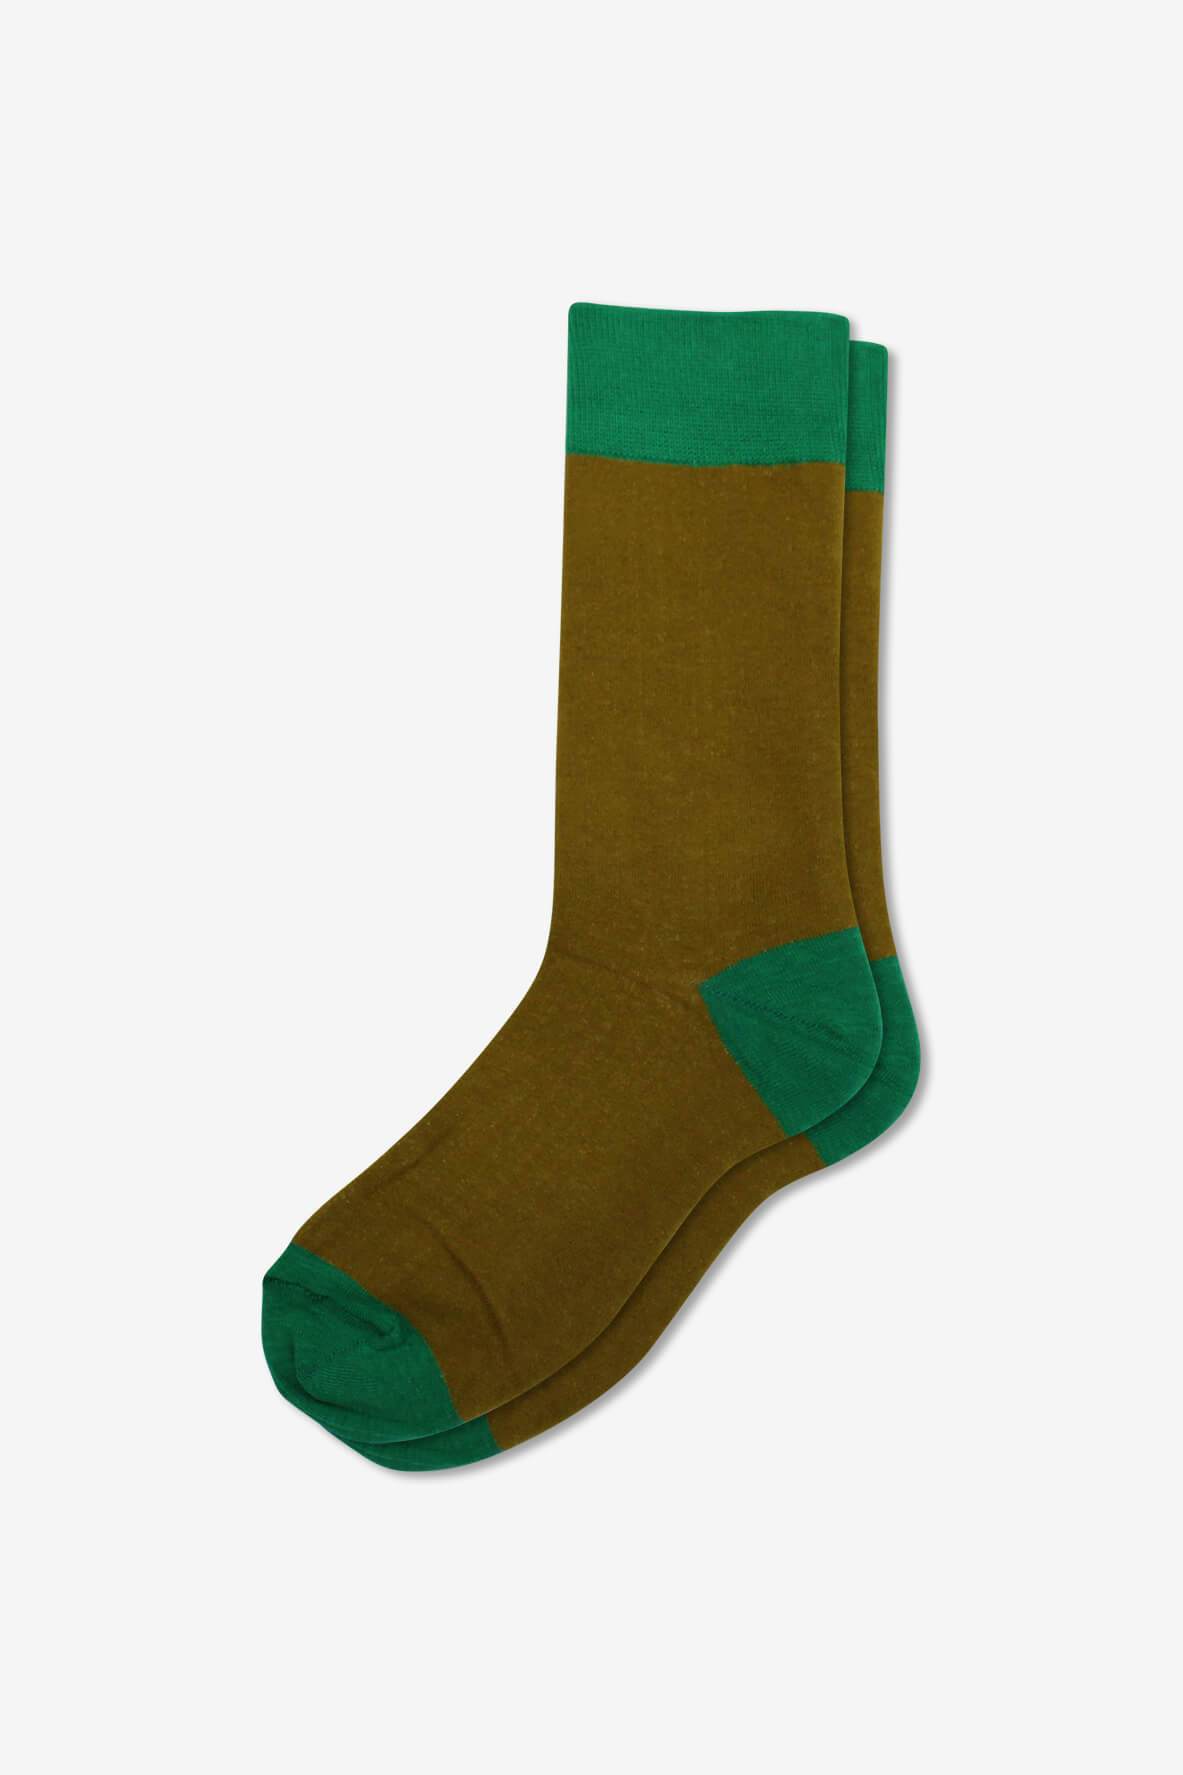 Socks IMG_5250, socks, GoTie